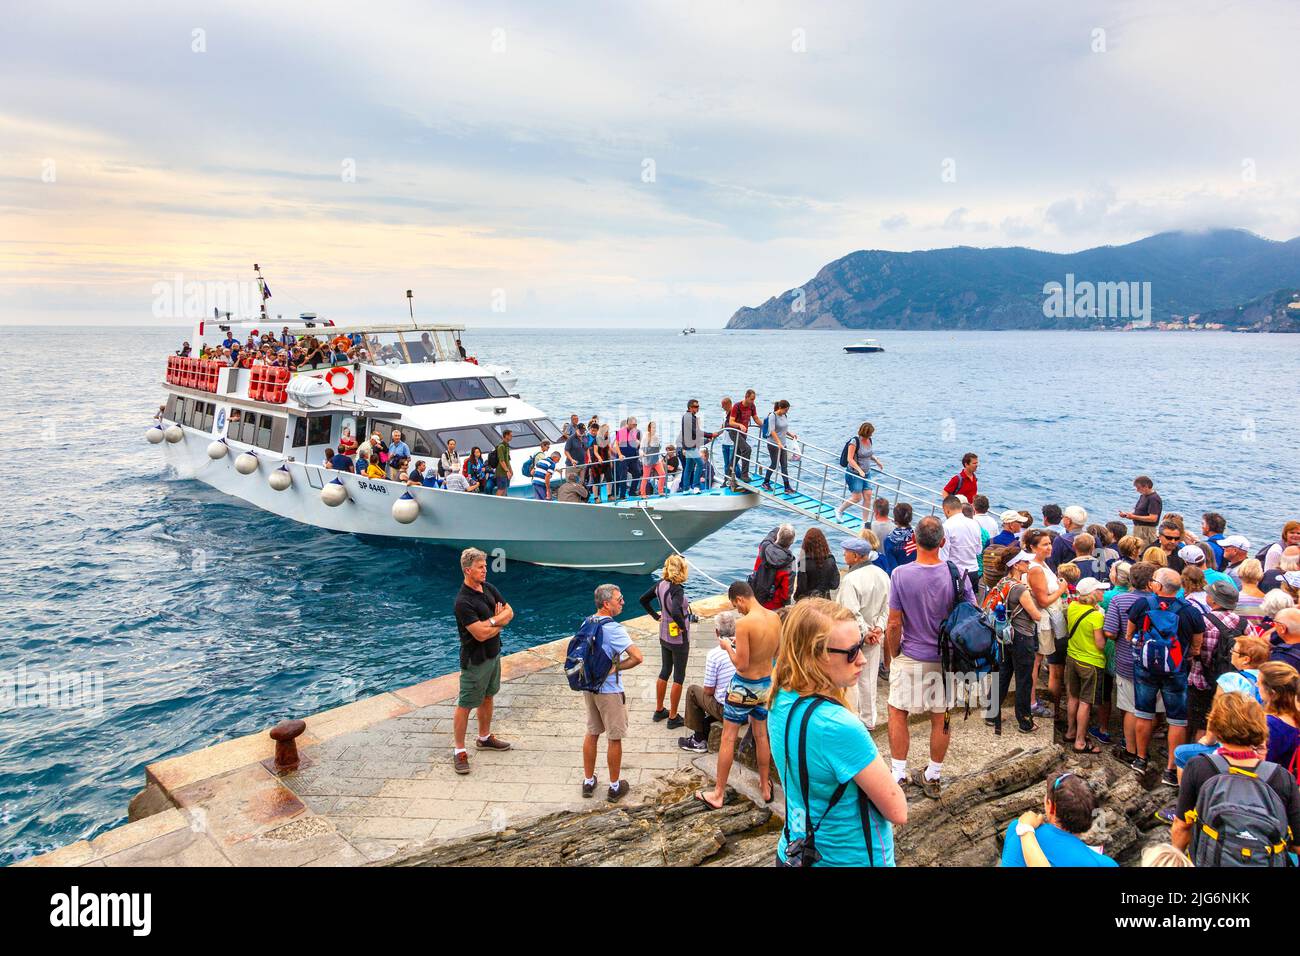 Busy tourist boat tour in the Vernazza marina, Cinque Terre, La Spezia, Italy Stock Photo